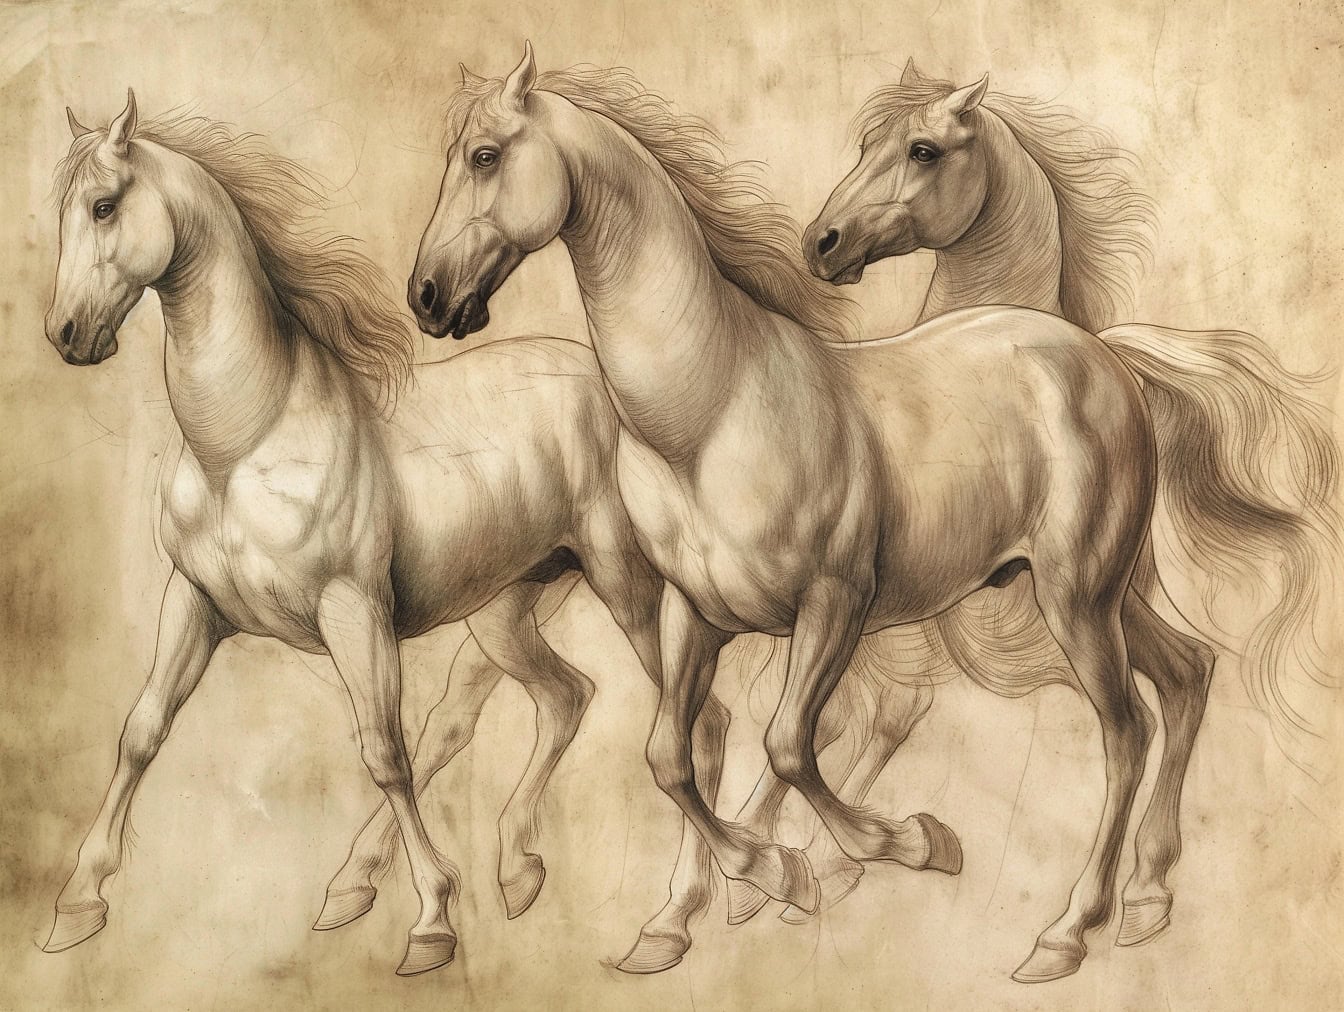 Ručná kresba troch koní s dlhou hrivou pri cvale, náčrt na starom vyblednutom žltkastom papieri